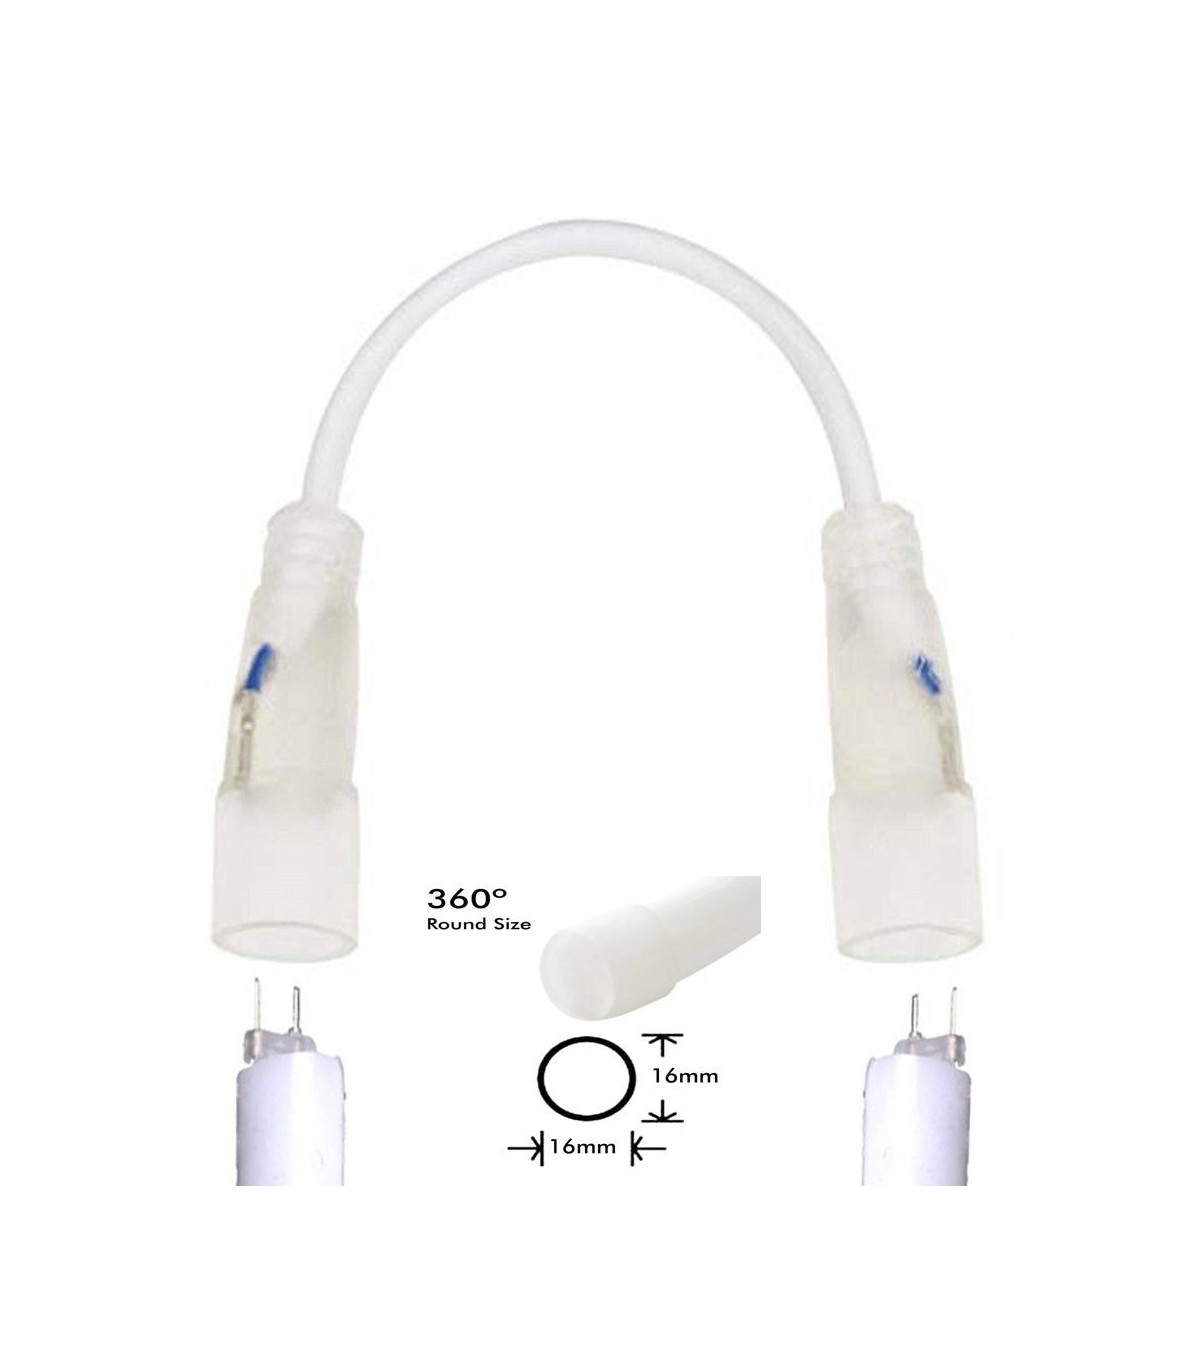 Câble connecteur pour néon LED circulaire 16mm